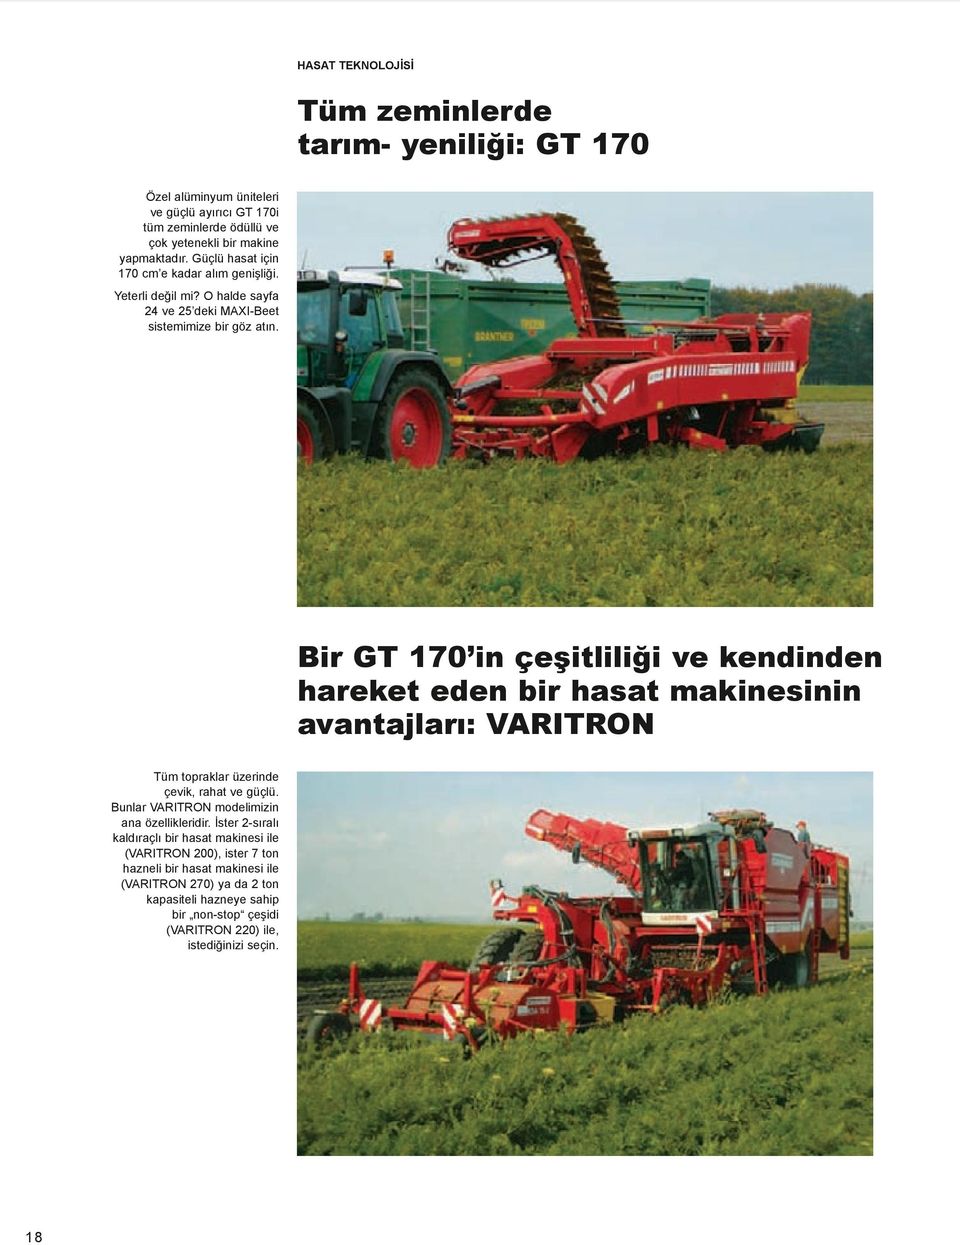 Bir GT 170 in çeşitliliği ve kendinden hareket eden bir hasat makinesinin avantajları: VARITRON Tüm topraklar üzerinde çevik, rahat ve güçlü.